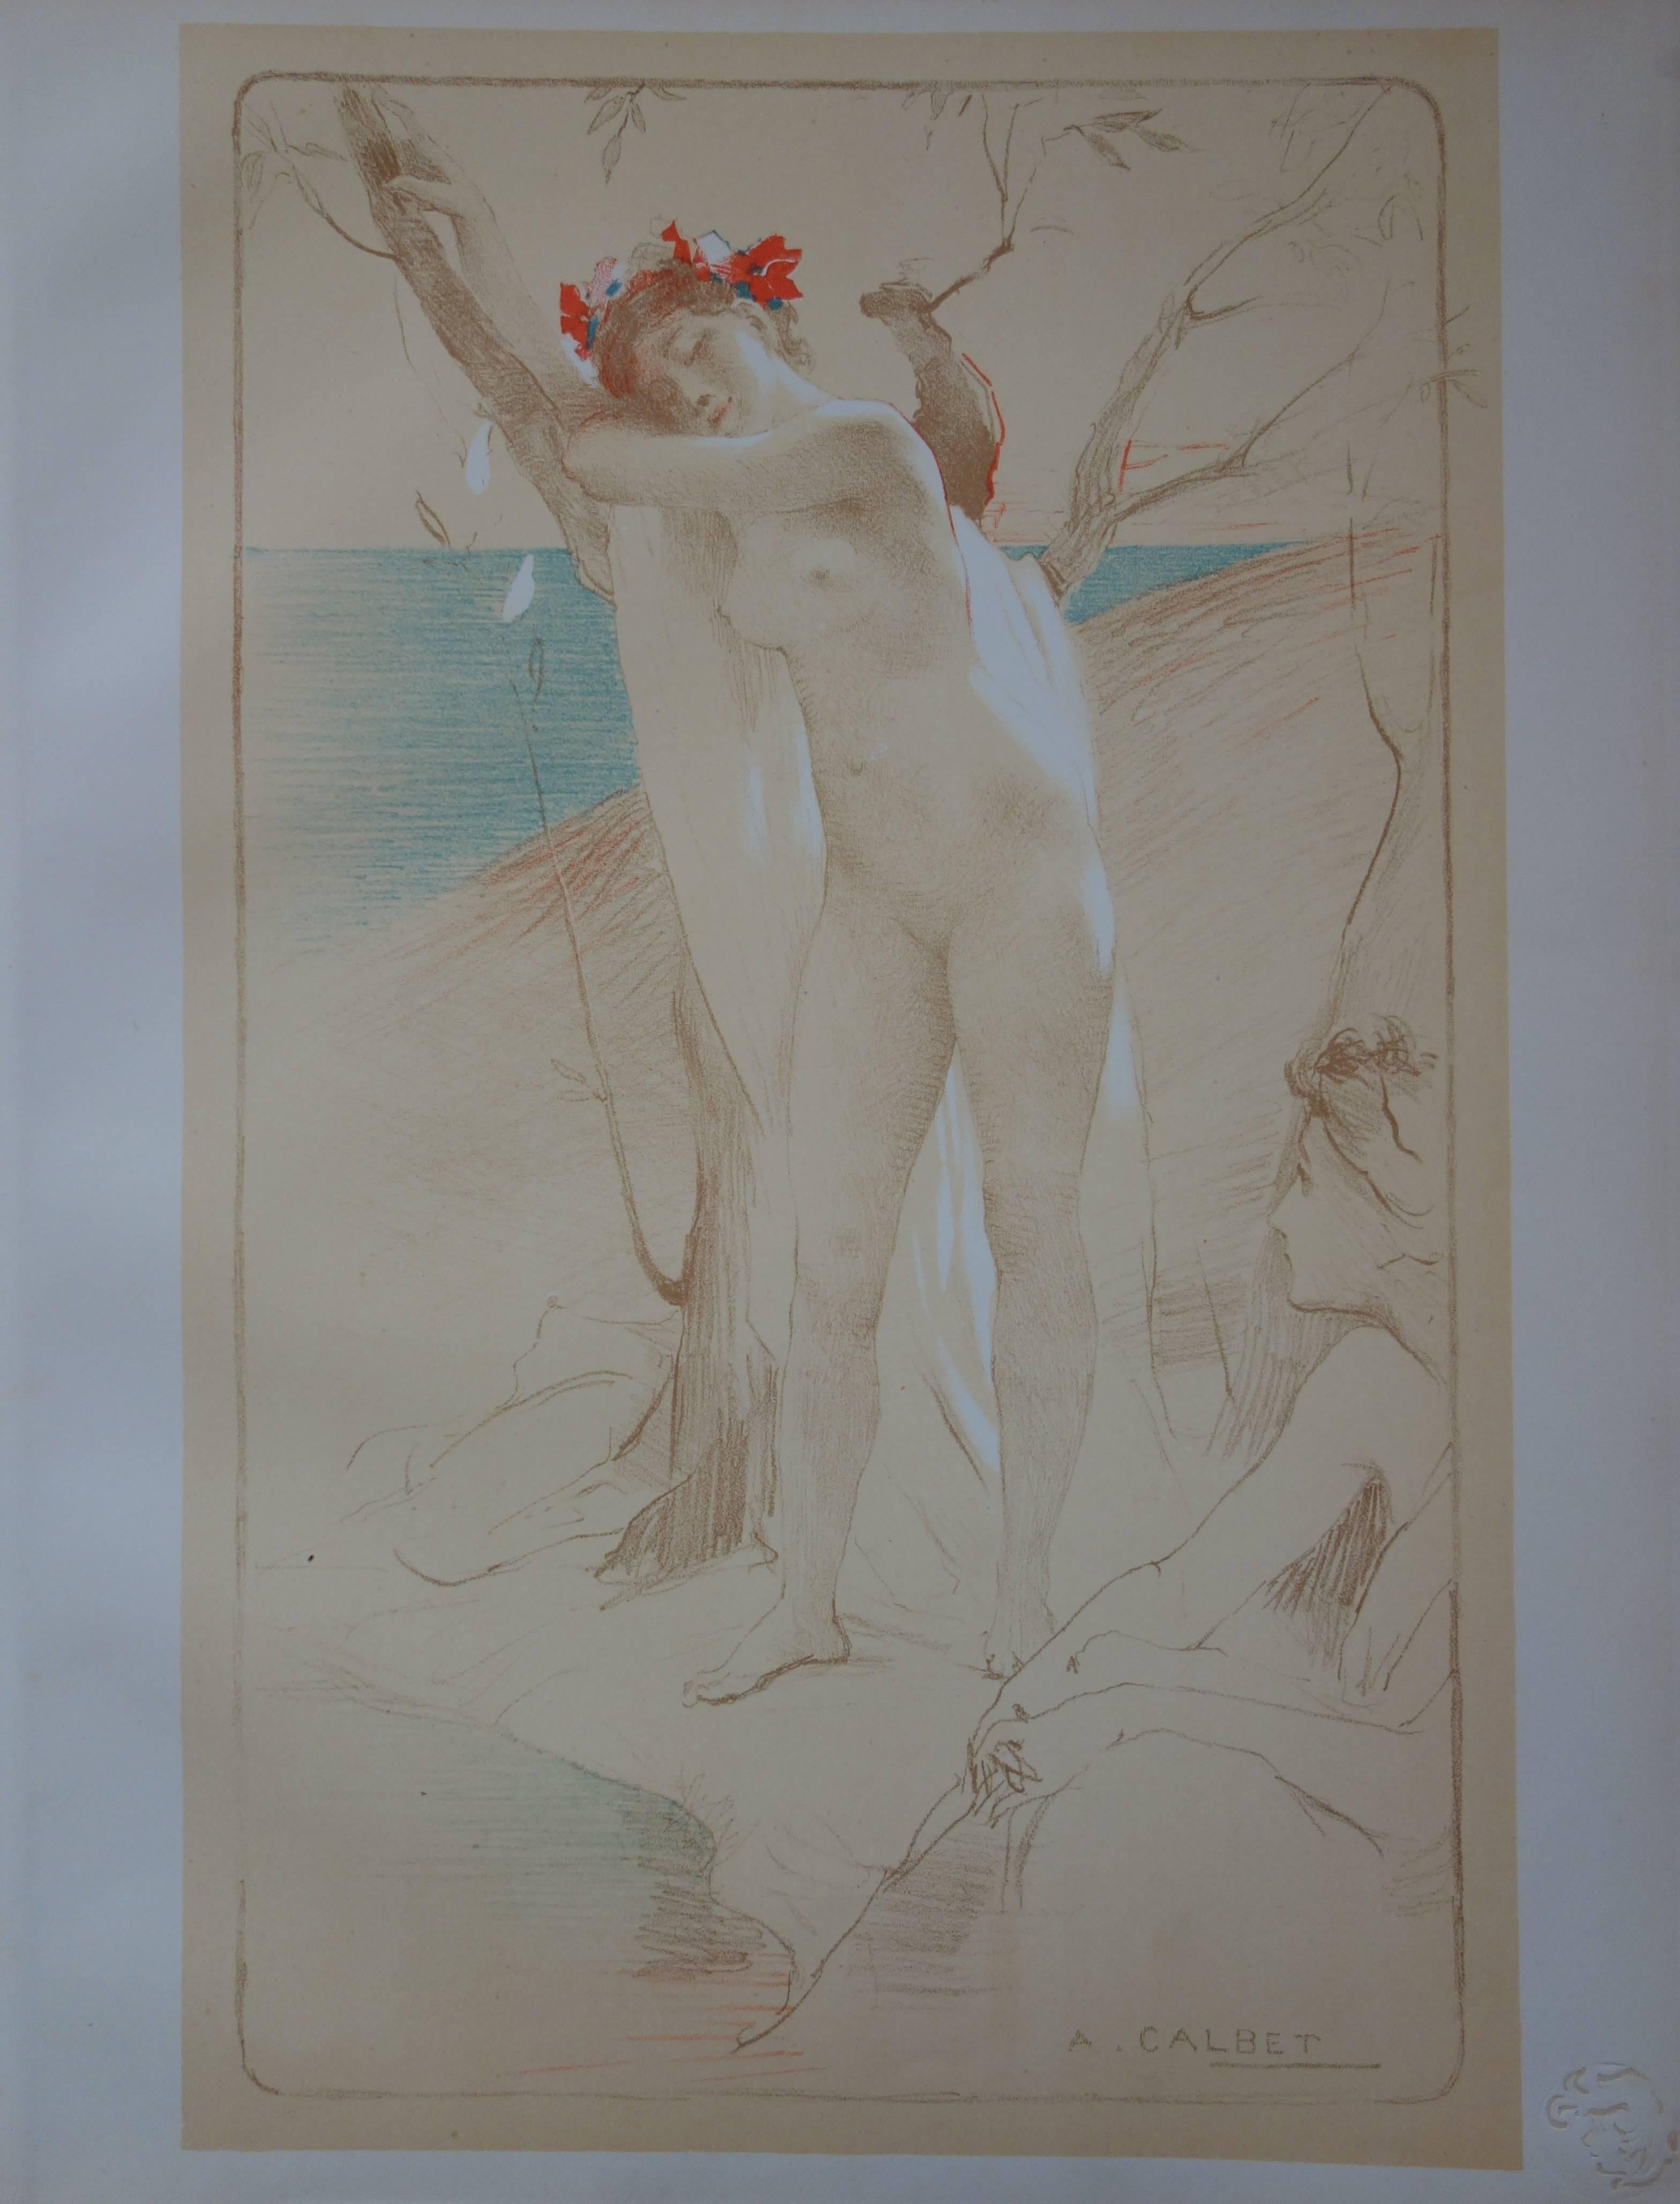 Nude Print Antoine Calbet - L'Inconnue - Lithographie originale - 1897